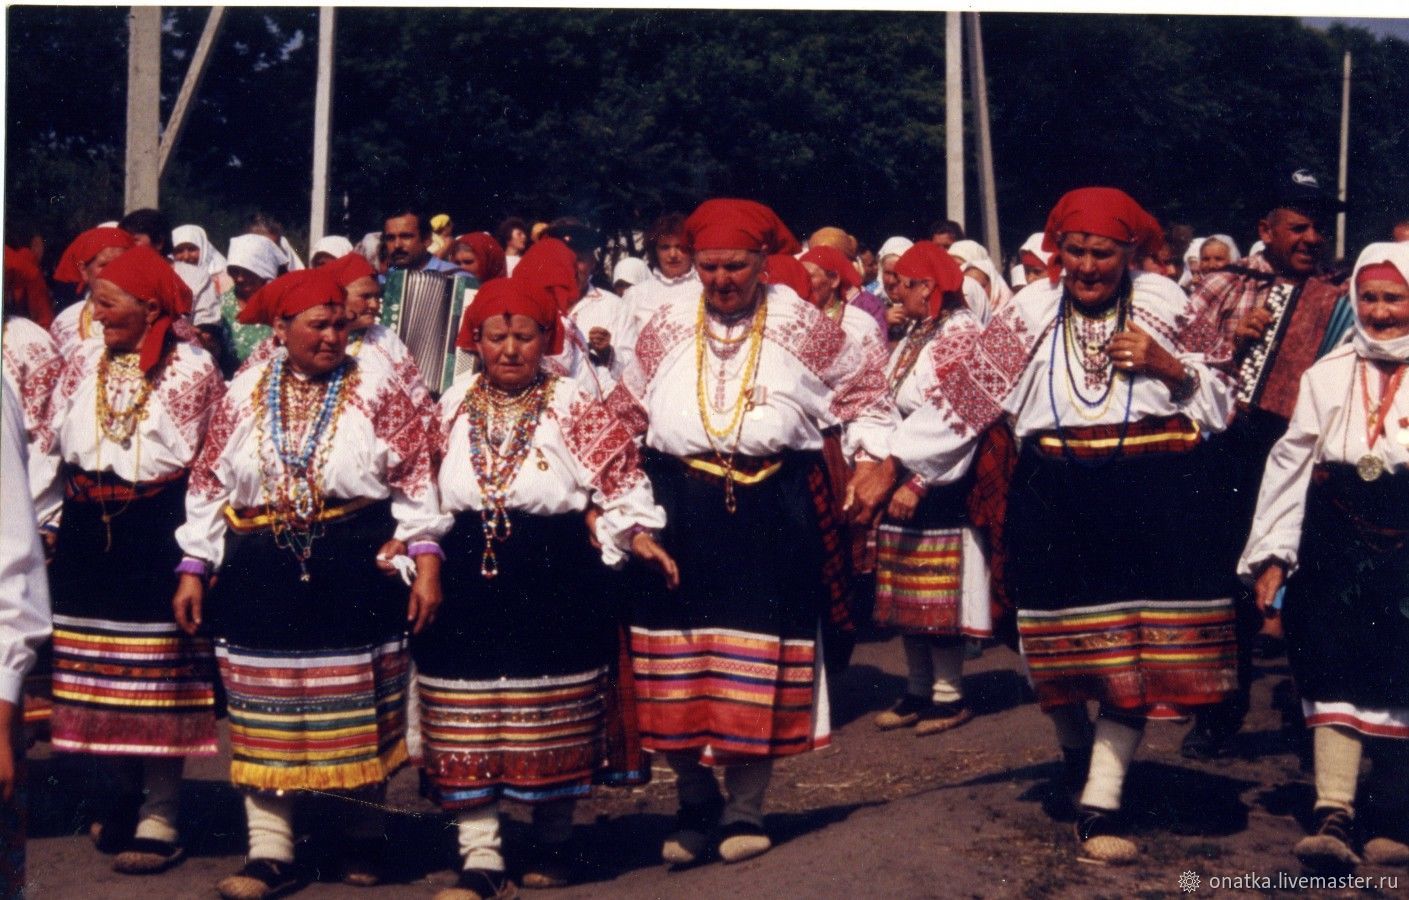 Национальный костюм воронежской области